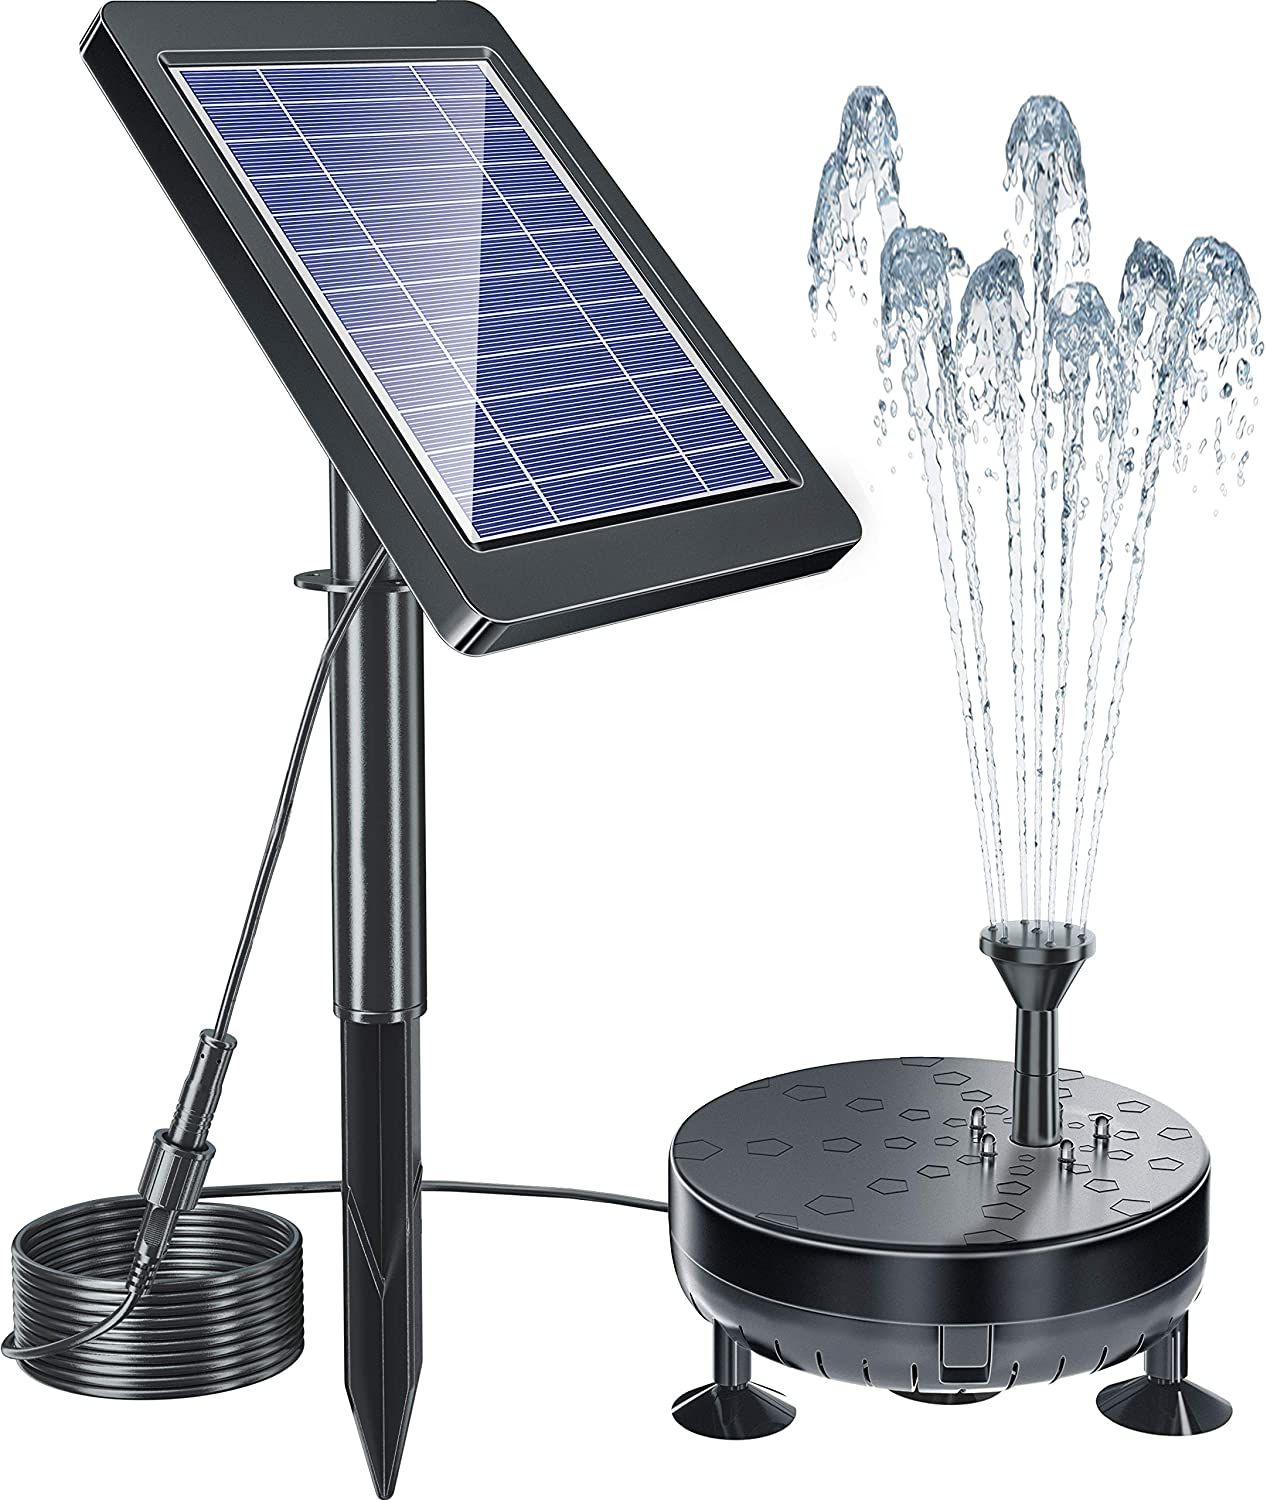 ソーラー噴水ポンプ LEDライト付き ガーデン用噴水 ソーラーパネル 夜間点灯 太陽光充電 ウォーターポンプ 酸素供給 水循環 ガーデン 池 ポンド プール(蓄電式)